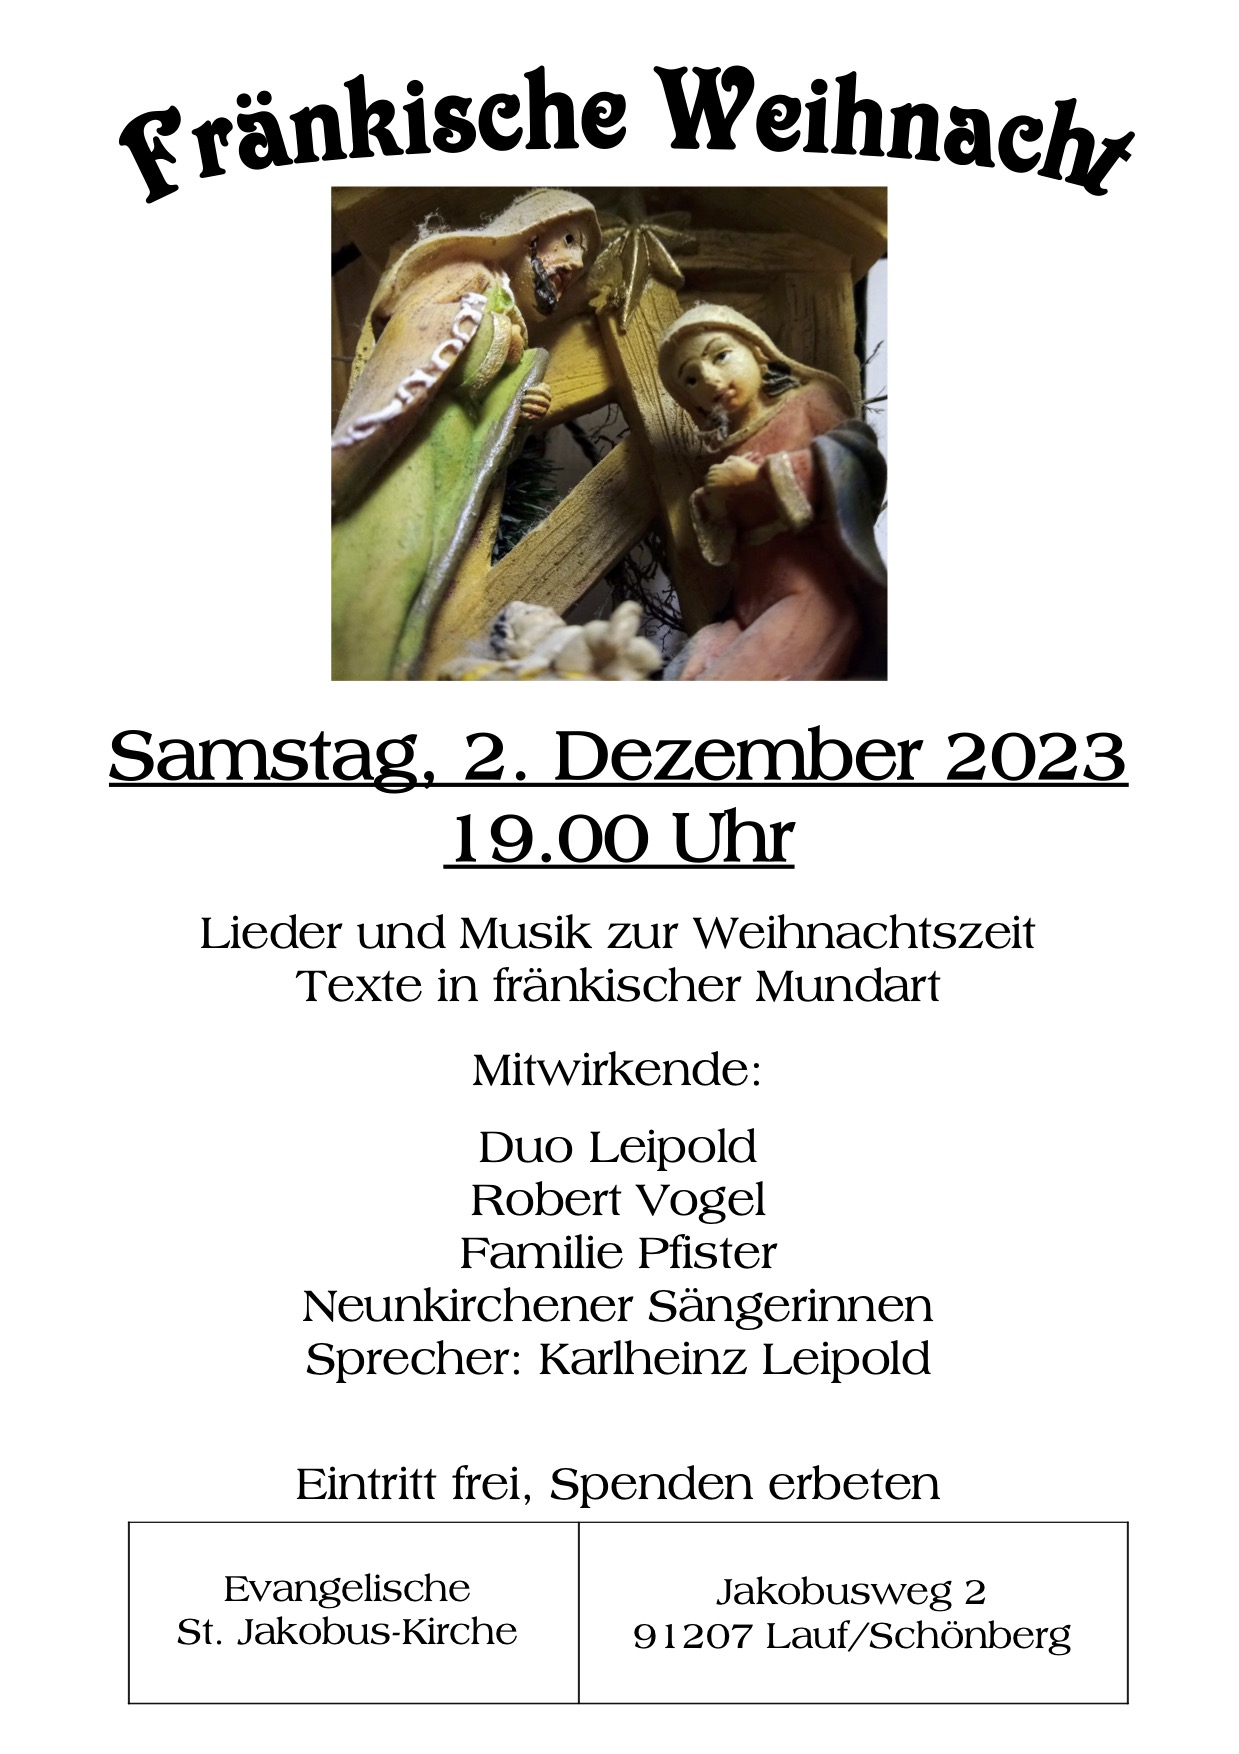 Einladung zur fränkischen Weihnacht am 2. Dezember um 19:00 Uhr in der Jakobuskirche